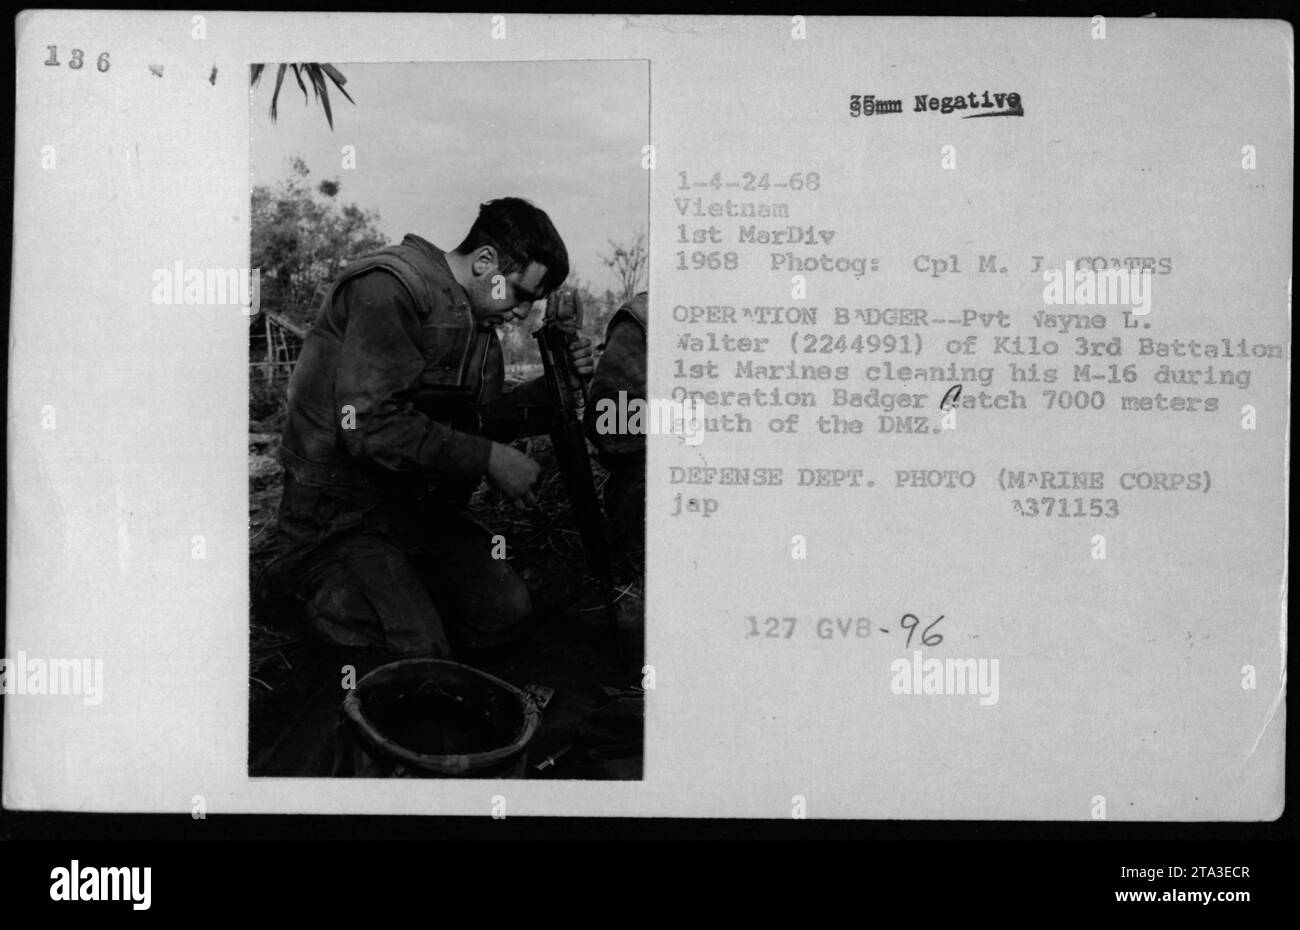 Der Marine-Privatmann Vayne L. Walter (2244991) vom Kilo 3rd Battalion 1st Marines wird während der Operation Badger Fang 7000 Meter südlich der DMZ gesehen, wie er sein M-16-Gewehr reinigt. Das Foto wurde 1968 von Corporal M. J. CO TES während der Kampfhandlungen in Vietnam aufgenommen. Stockfoto